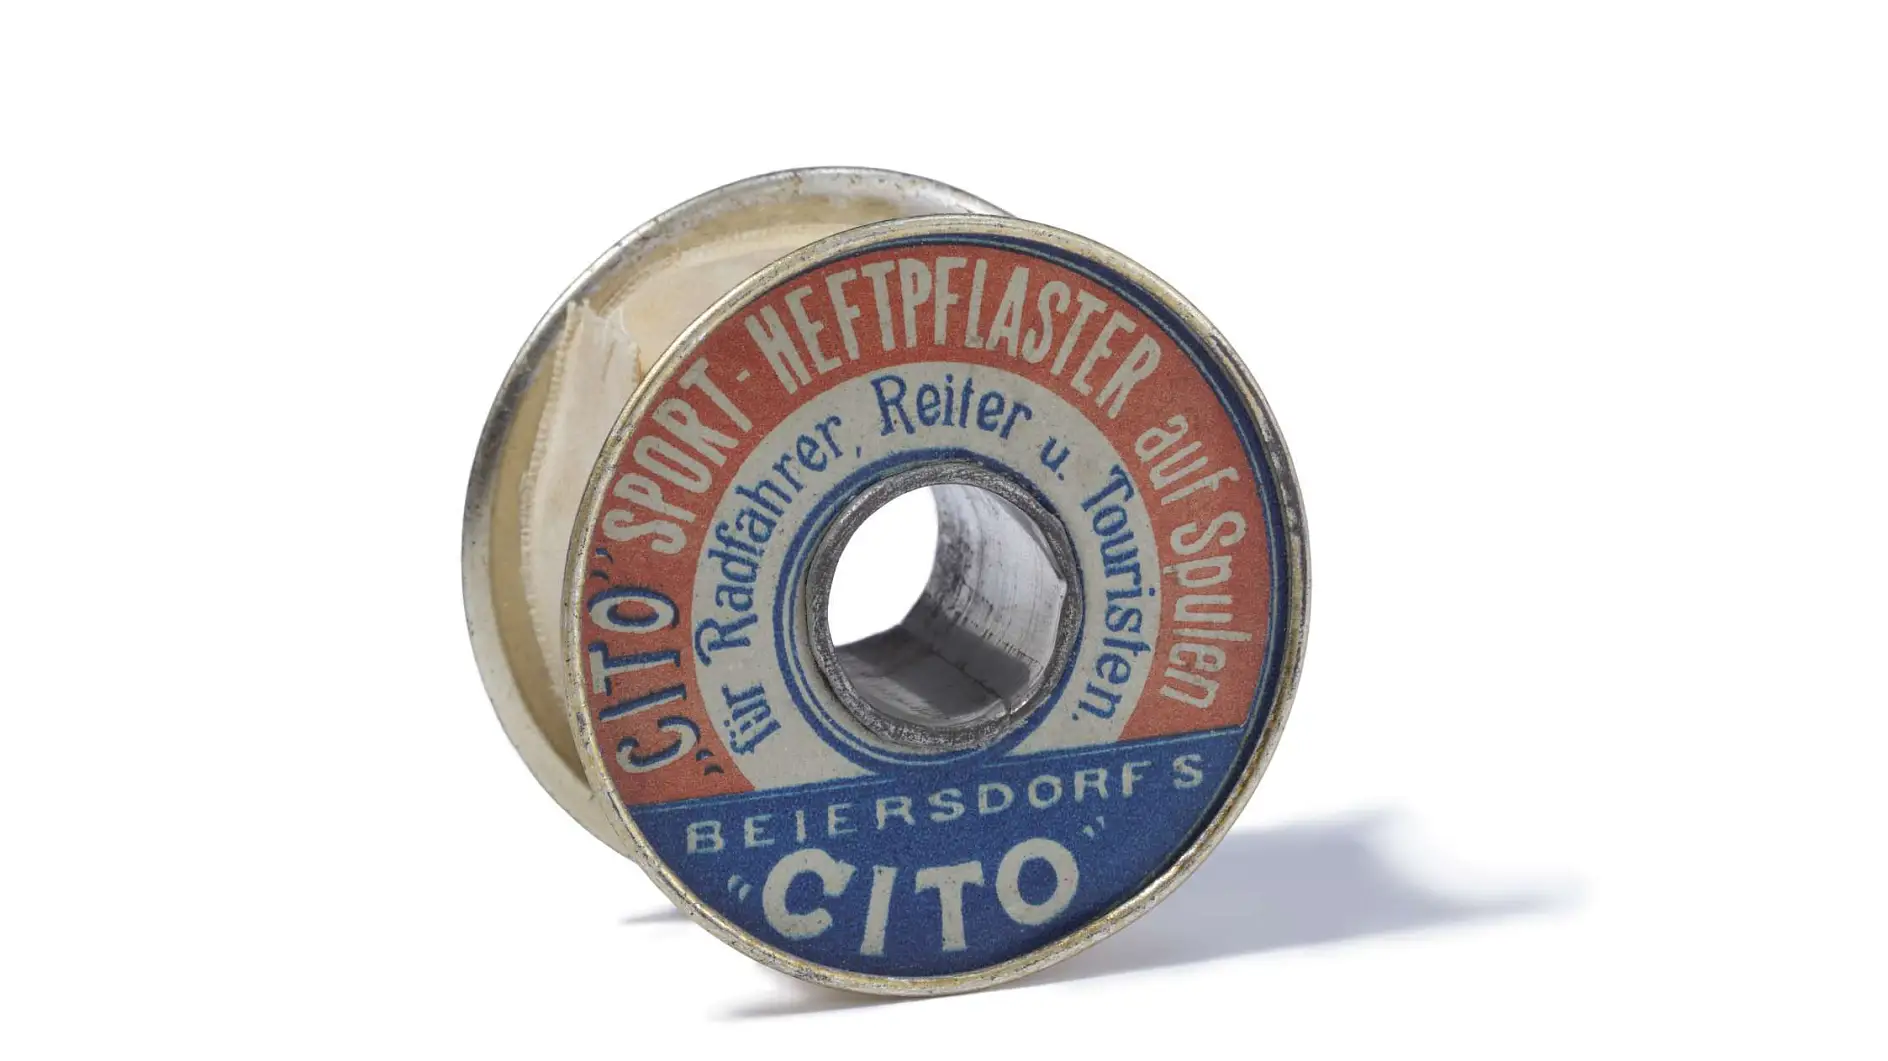 Sportovní náplast Cito z roku 1896 je první technickou lepicí páskou na světě.